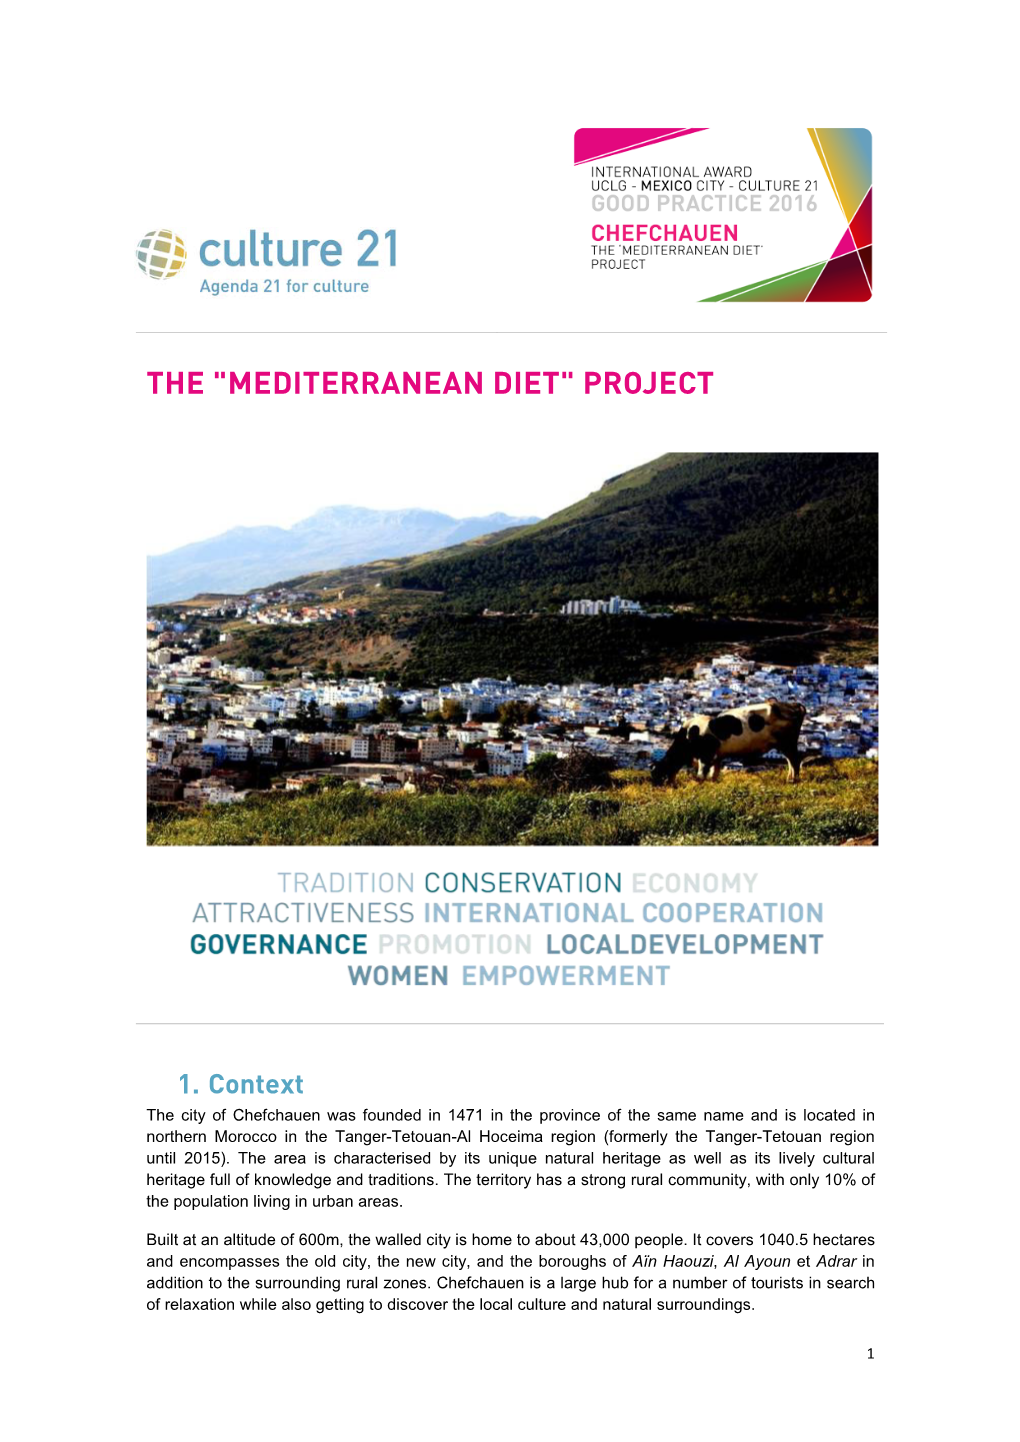 Mediterranean Diet" Project